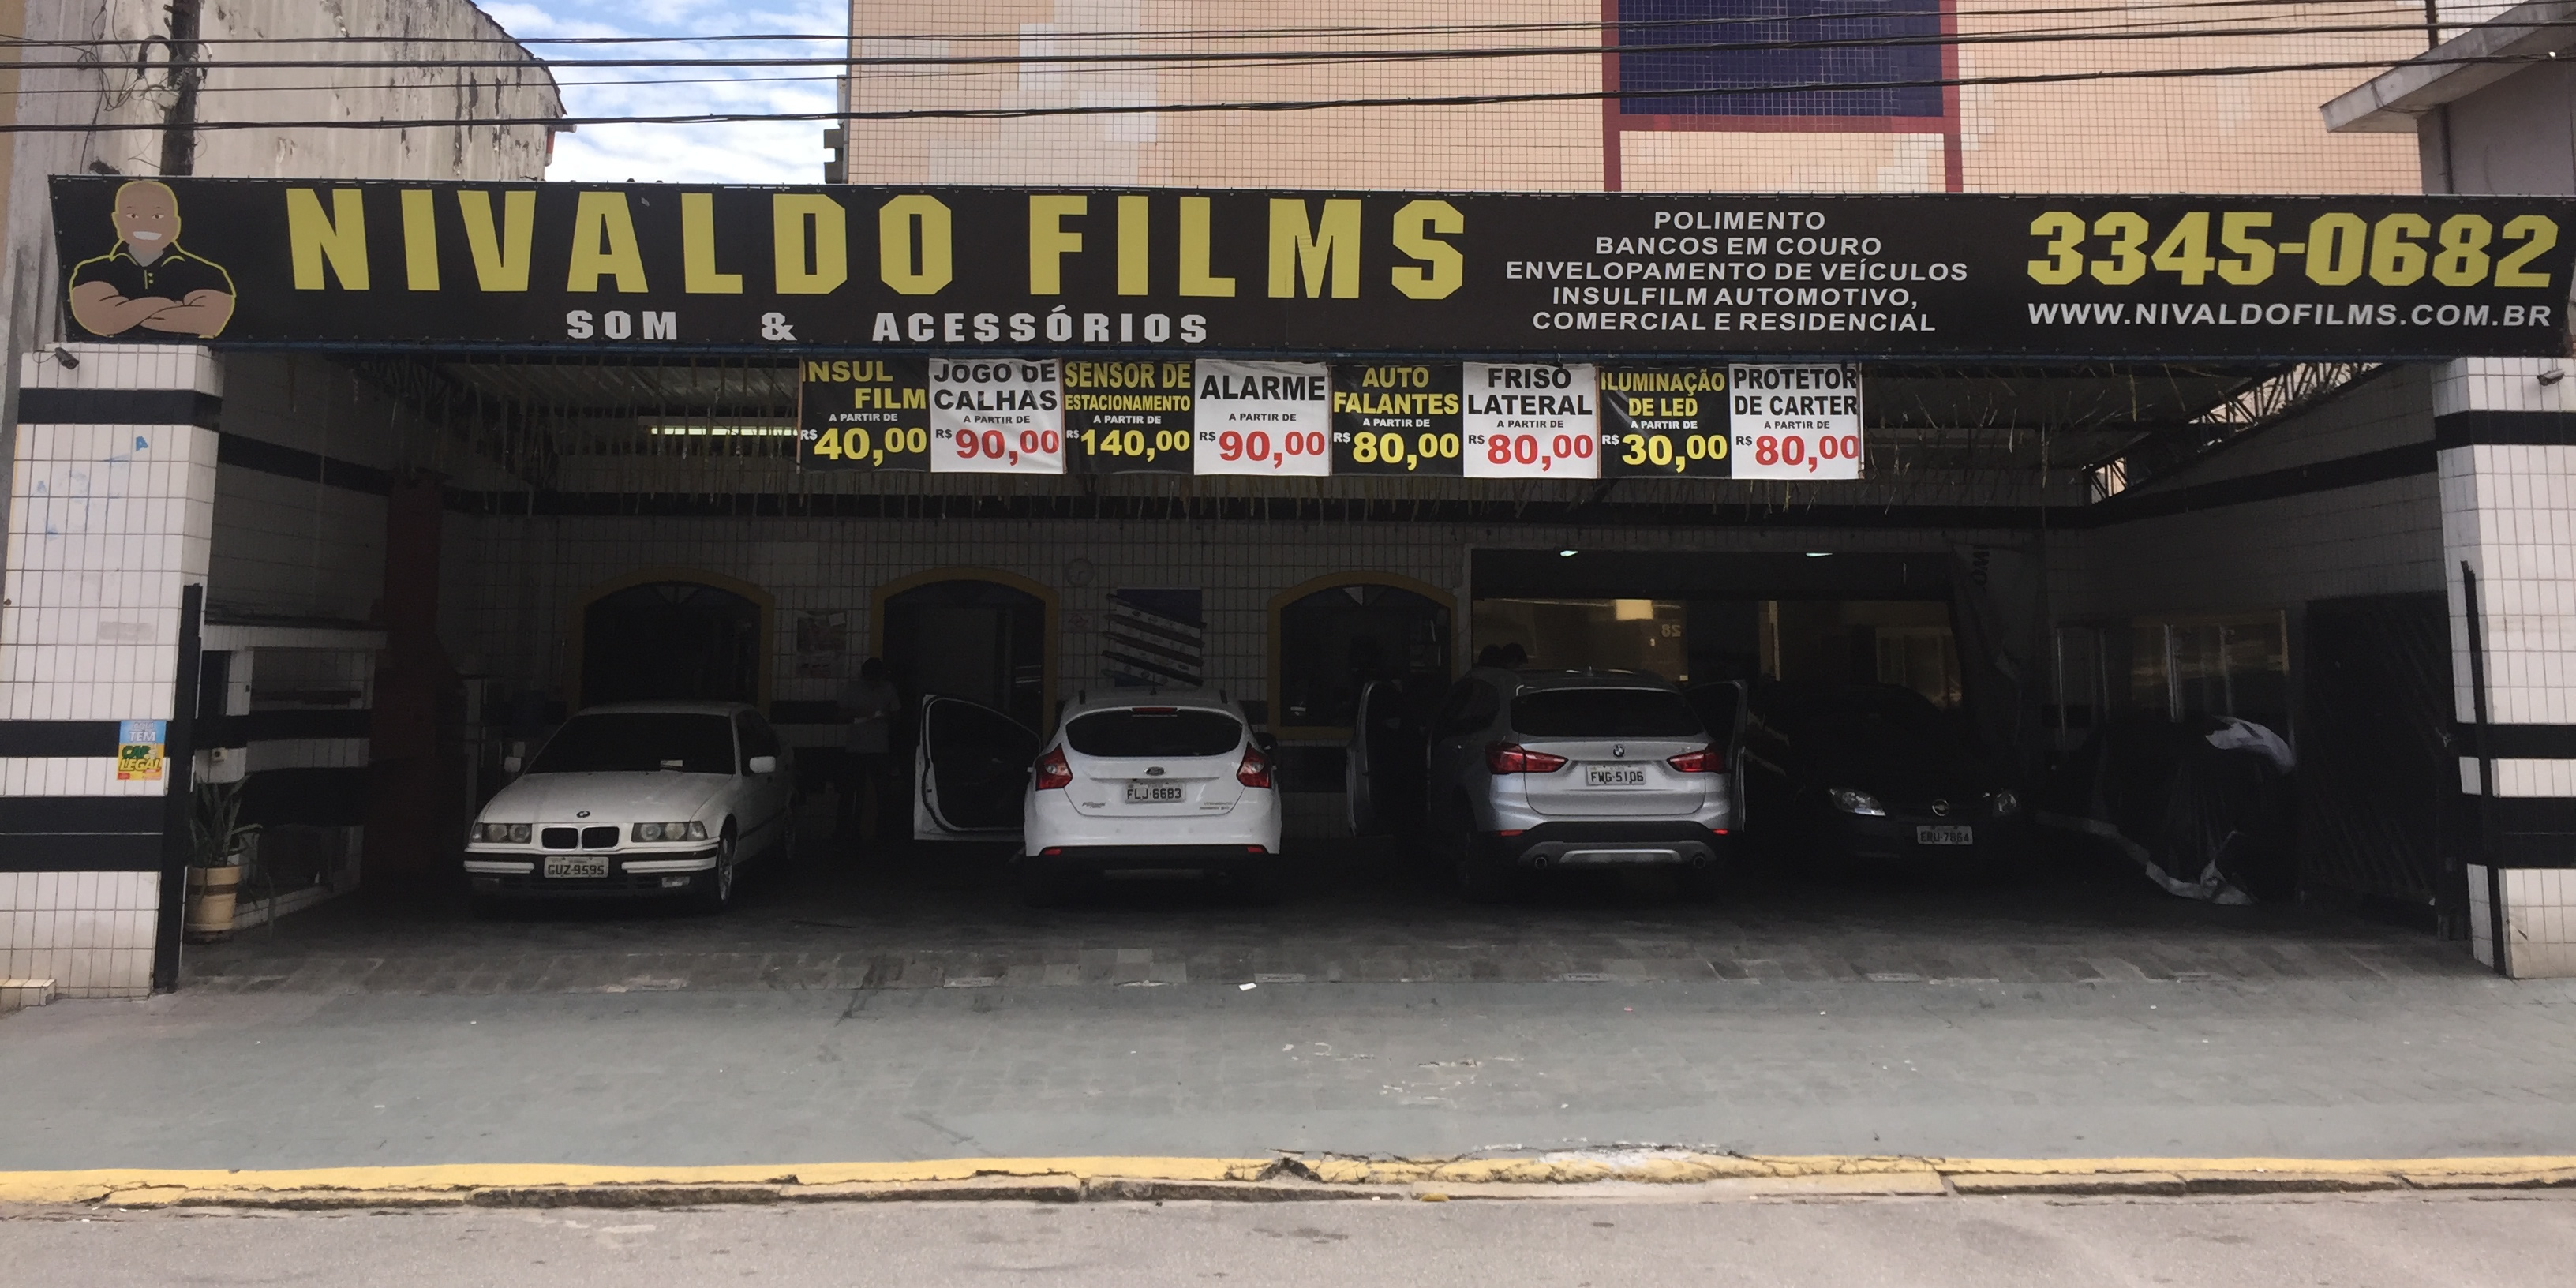 A loja - Nivaldo Films